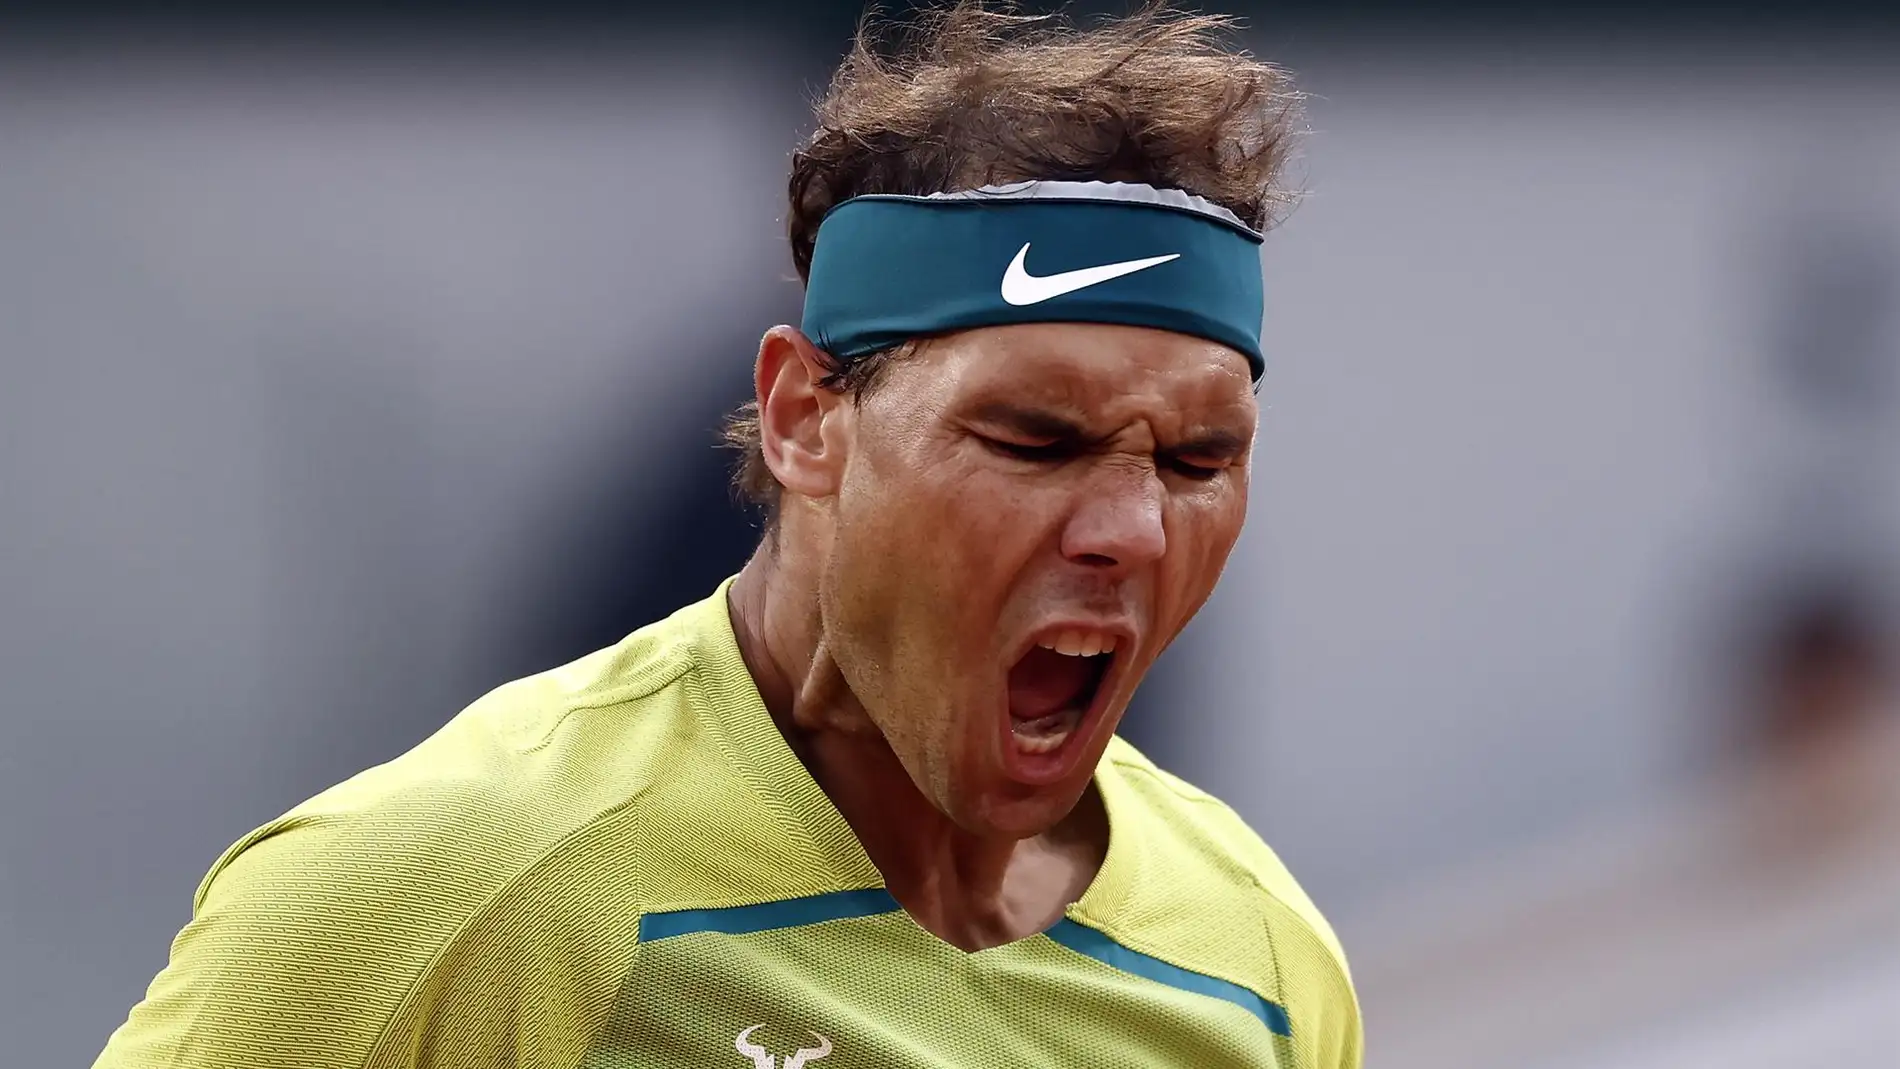 Cuartos de final de Roland Garros: ¿Cuándo juegan Nadal y Alcaraz?